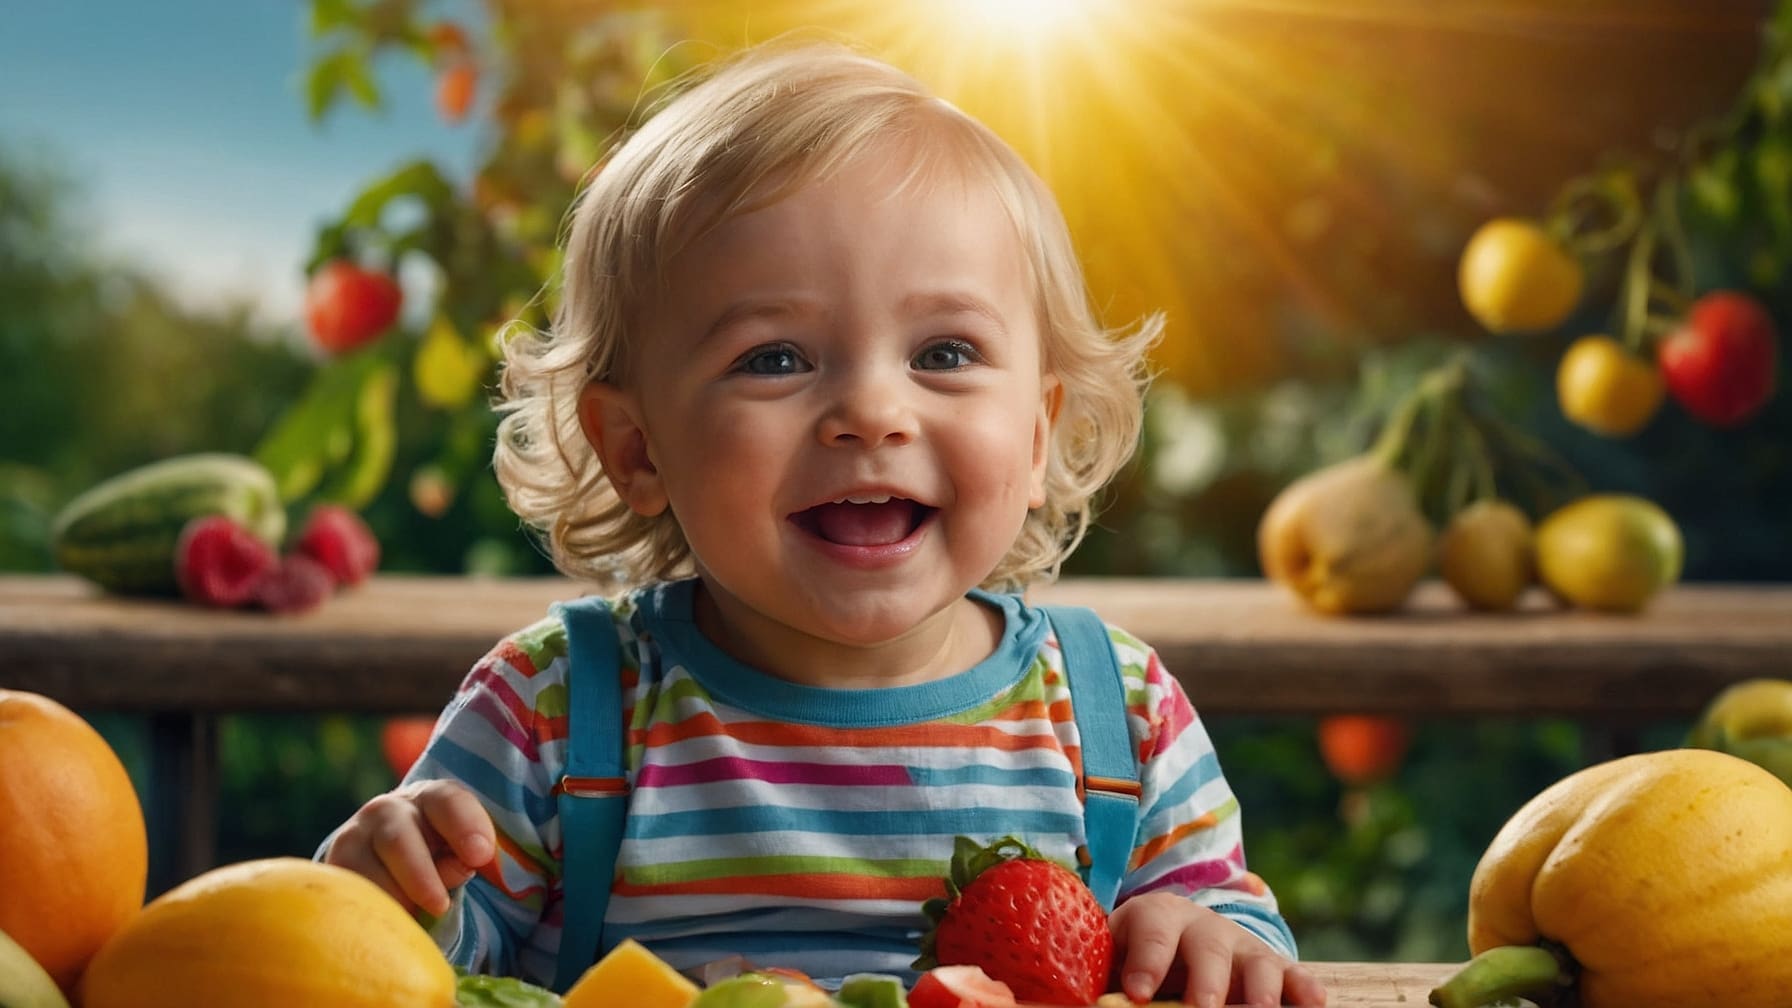 Alimentazione bambini di 2 anni: scopri la guida pratica sull'alimentazione con consigli, esigenze nutrizionali e menu giornalieri